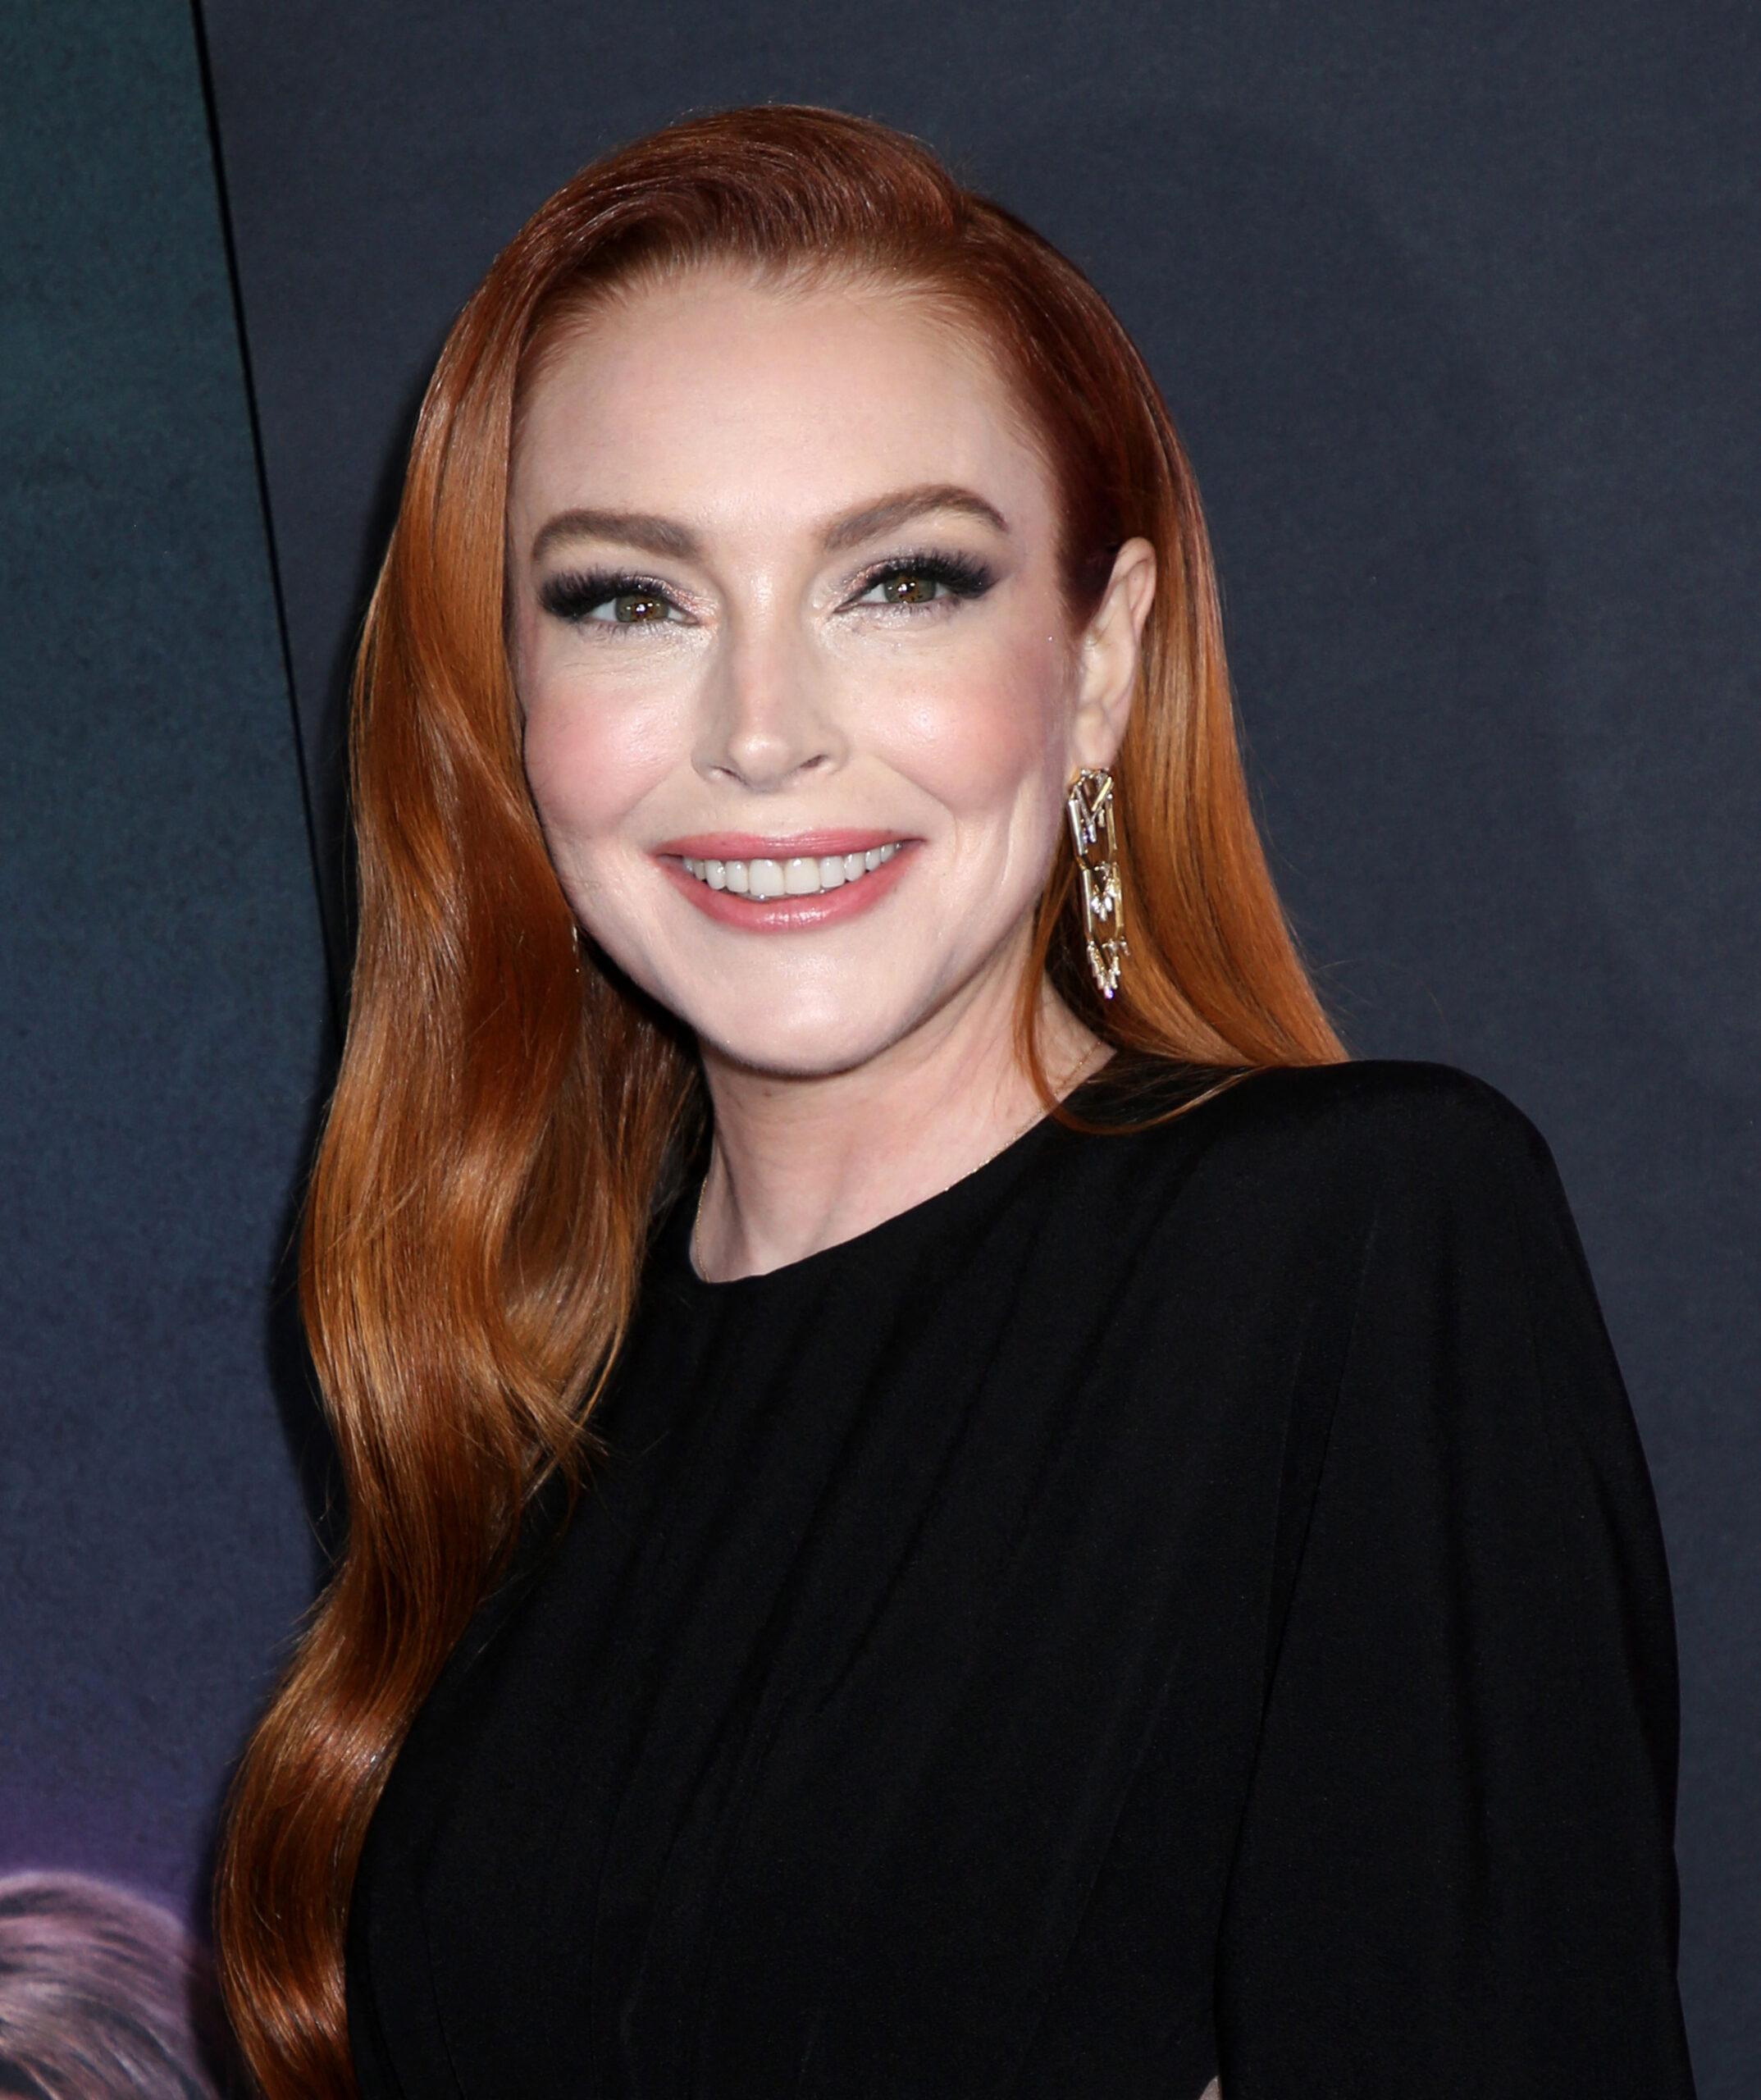 Lindsay Lohan chateada com a piada de 'garotas malvadas' fazendo referência ao corpo dela